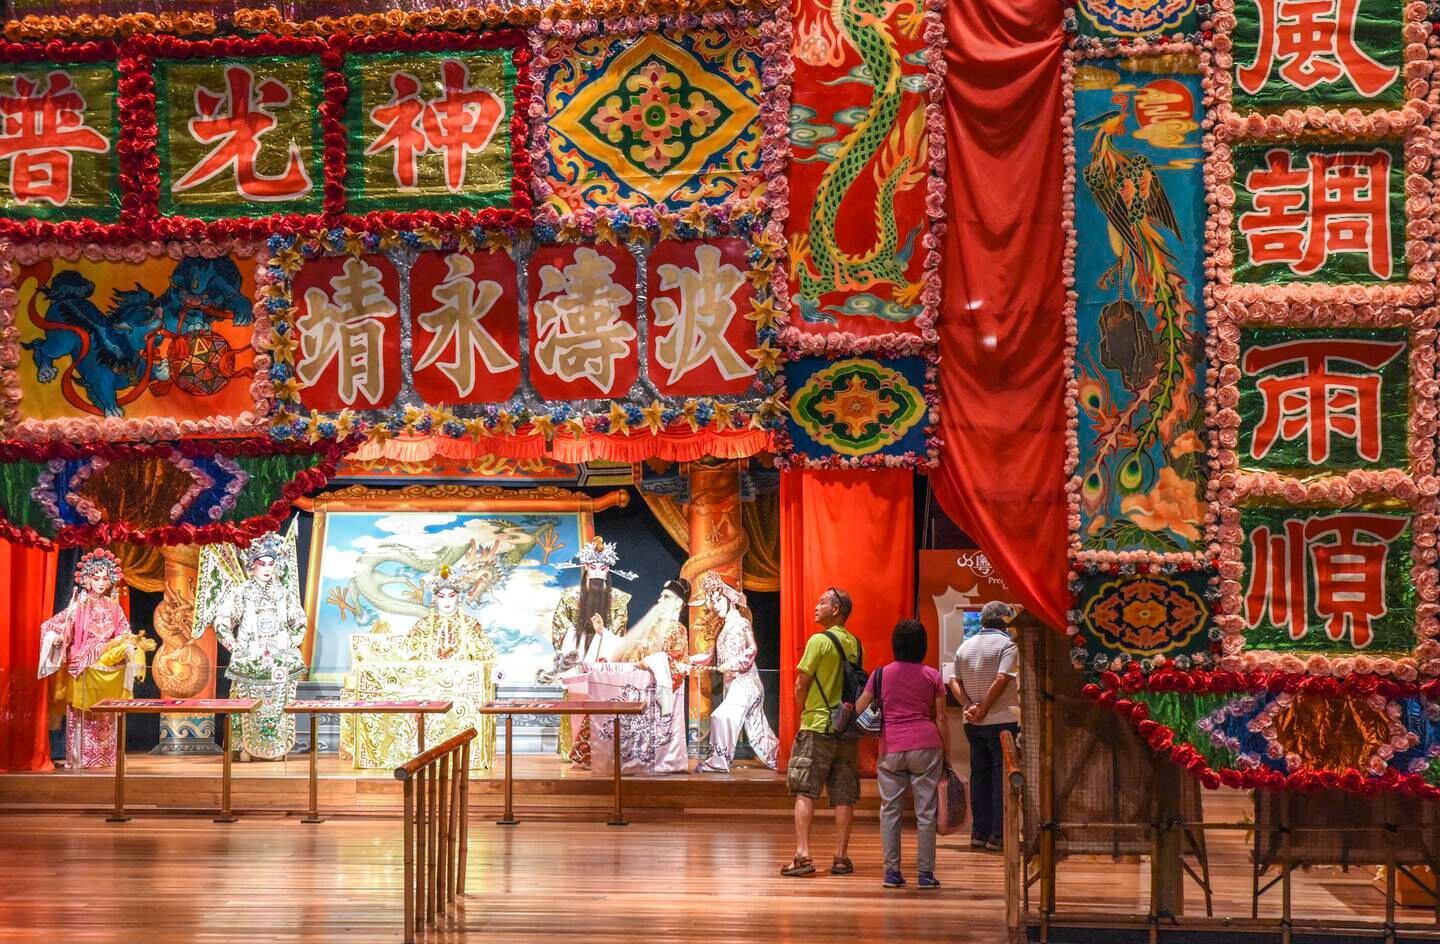 Das Hong Kong Heritage Museum beschreibt die Kunst- und Kulturgeschichte der Stadt.  Ronan O'Connell für The National